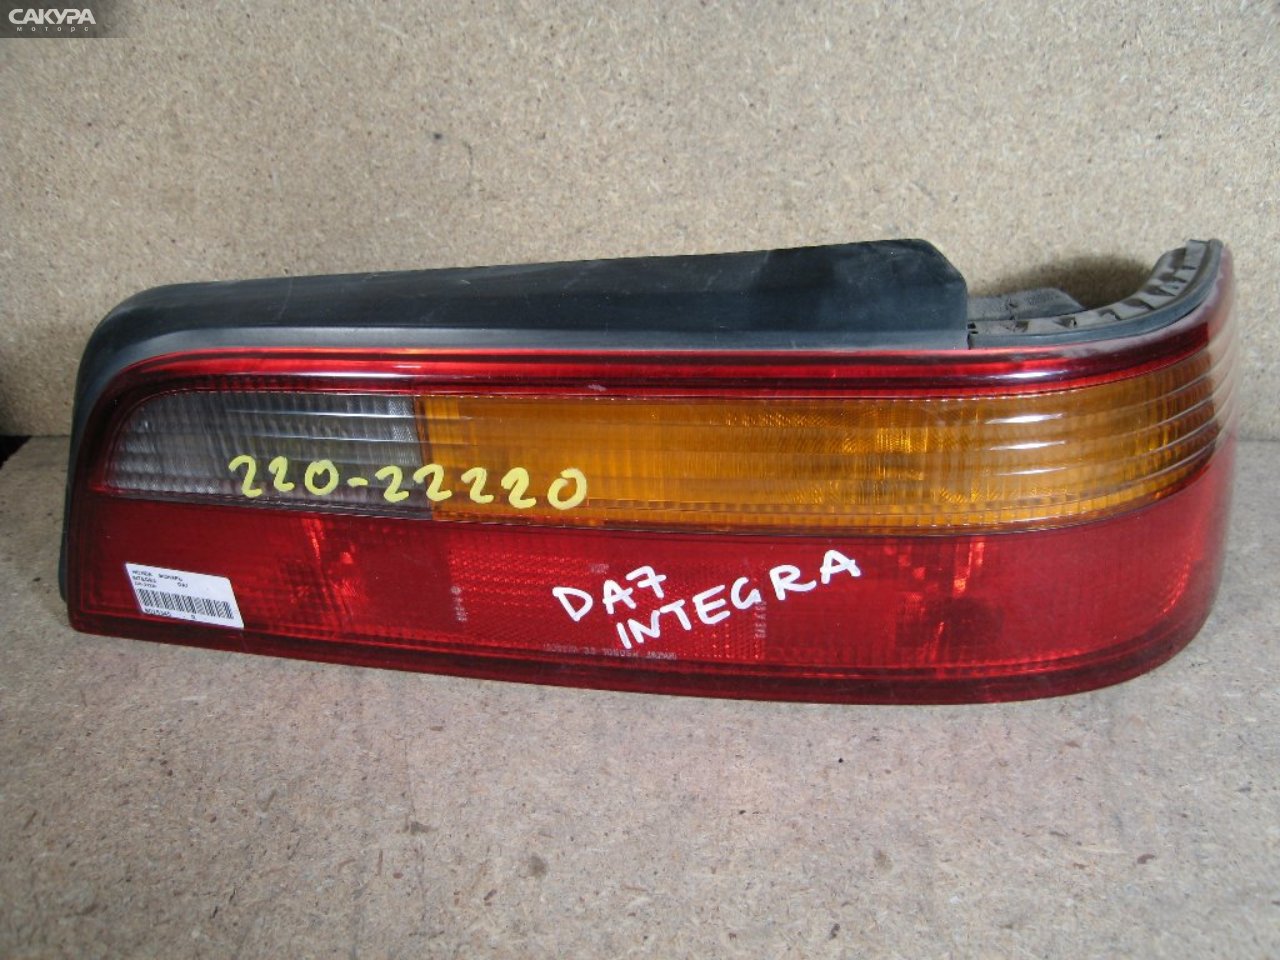 Фонарь стоп-сигнала правый Honda Integra DA7 220-22220: купить в Сакура Абакан.